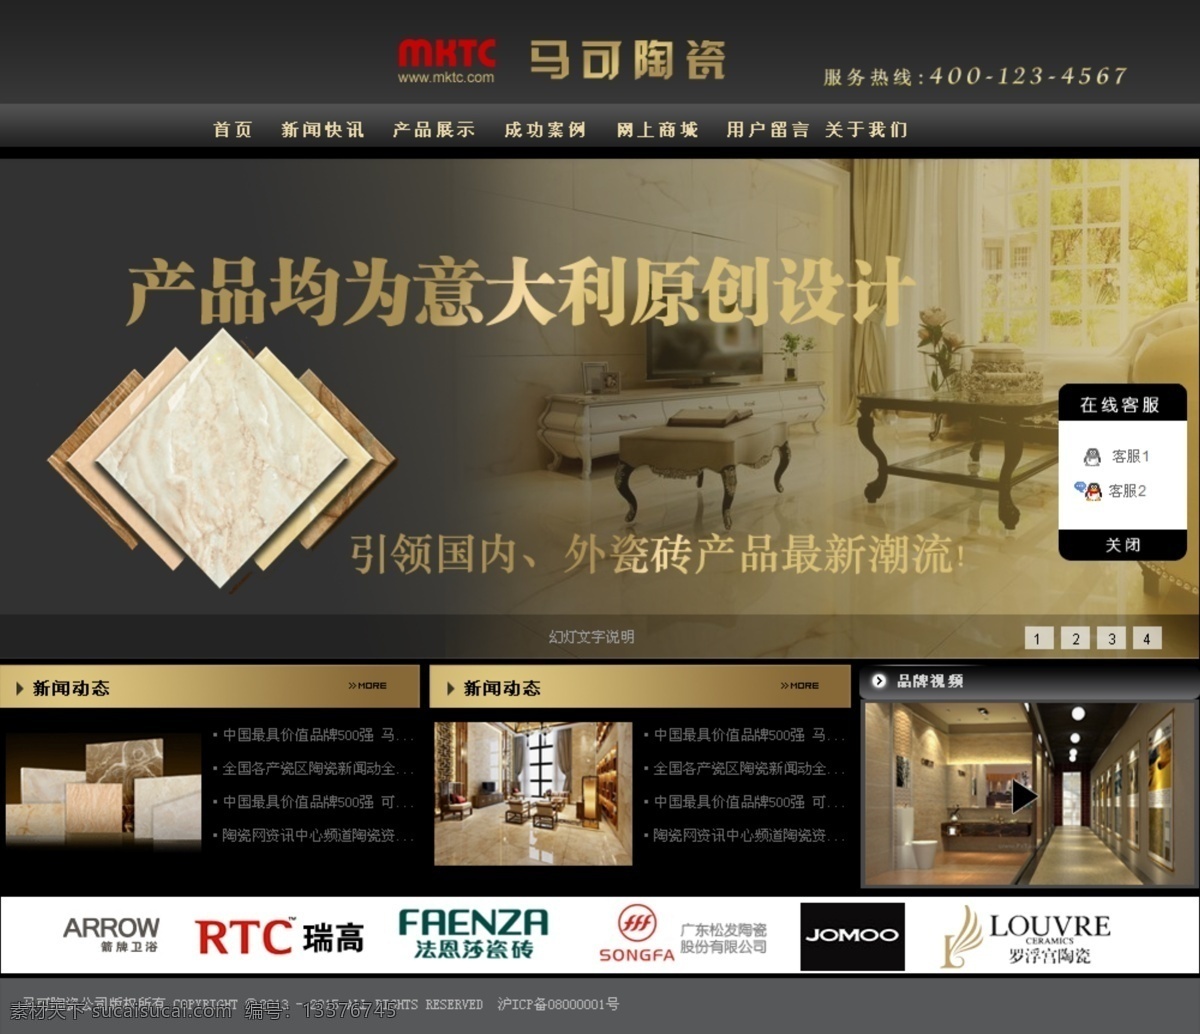 陶瓷 网页模板 网站 网站模版 源文件 中文模板 行业 模版 模板下载 陶瓷网站模版 网页素材